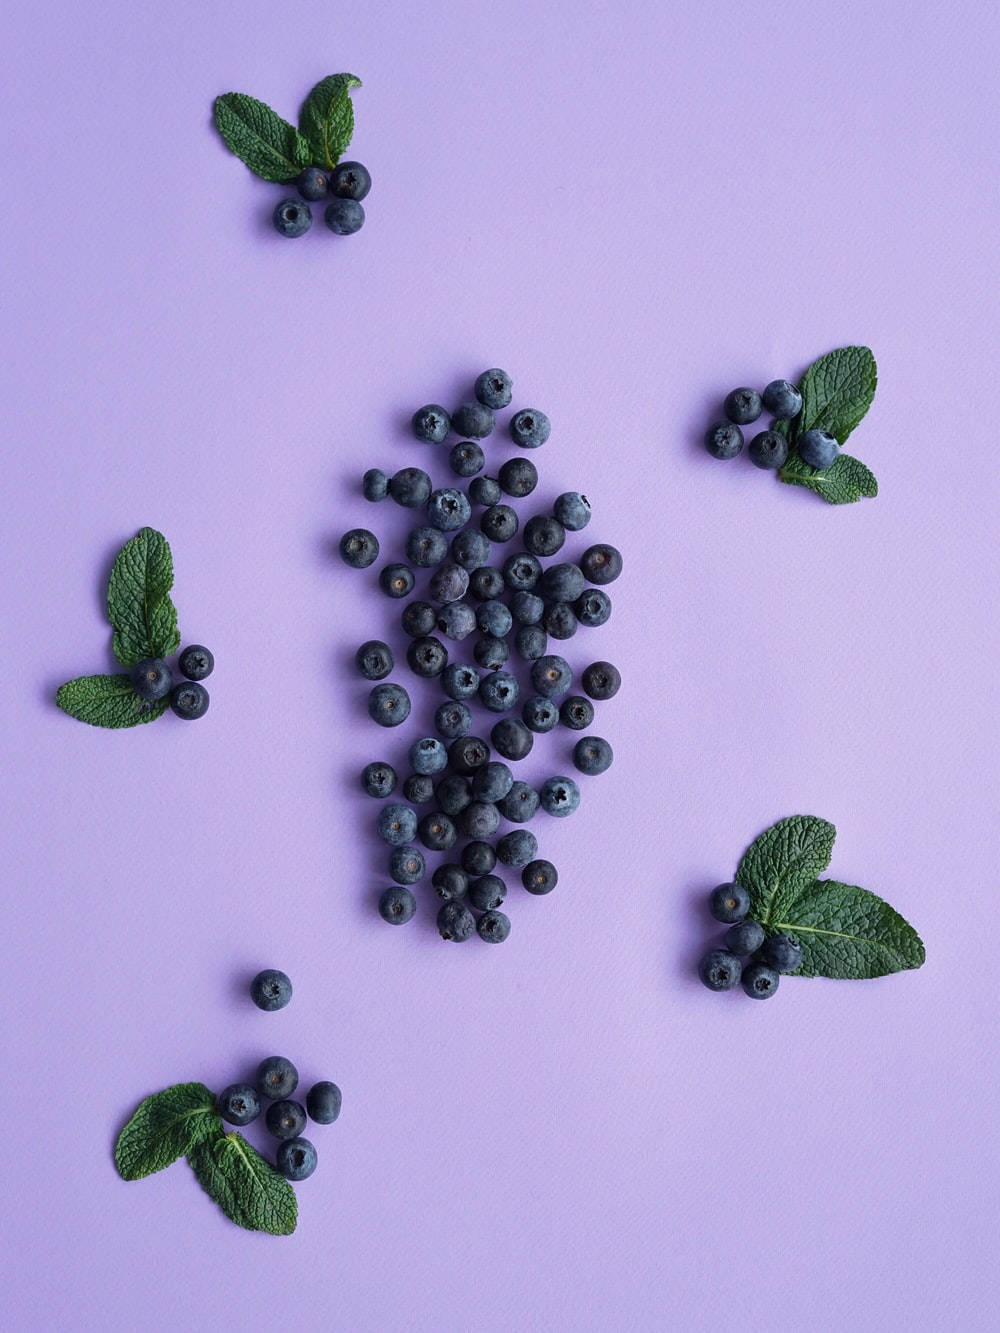 Blueberries In Aesthetic Purple Arrangement Wallpaper